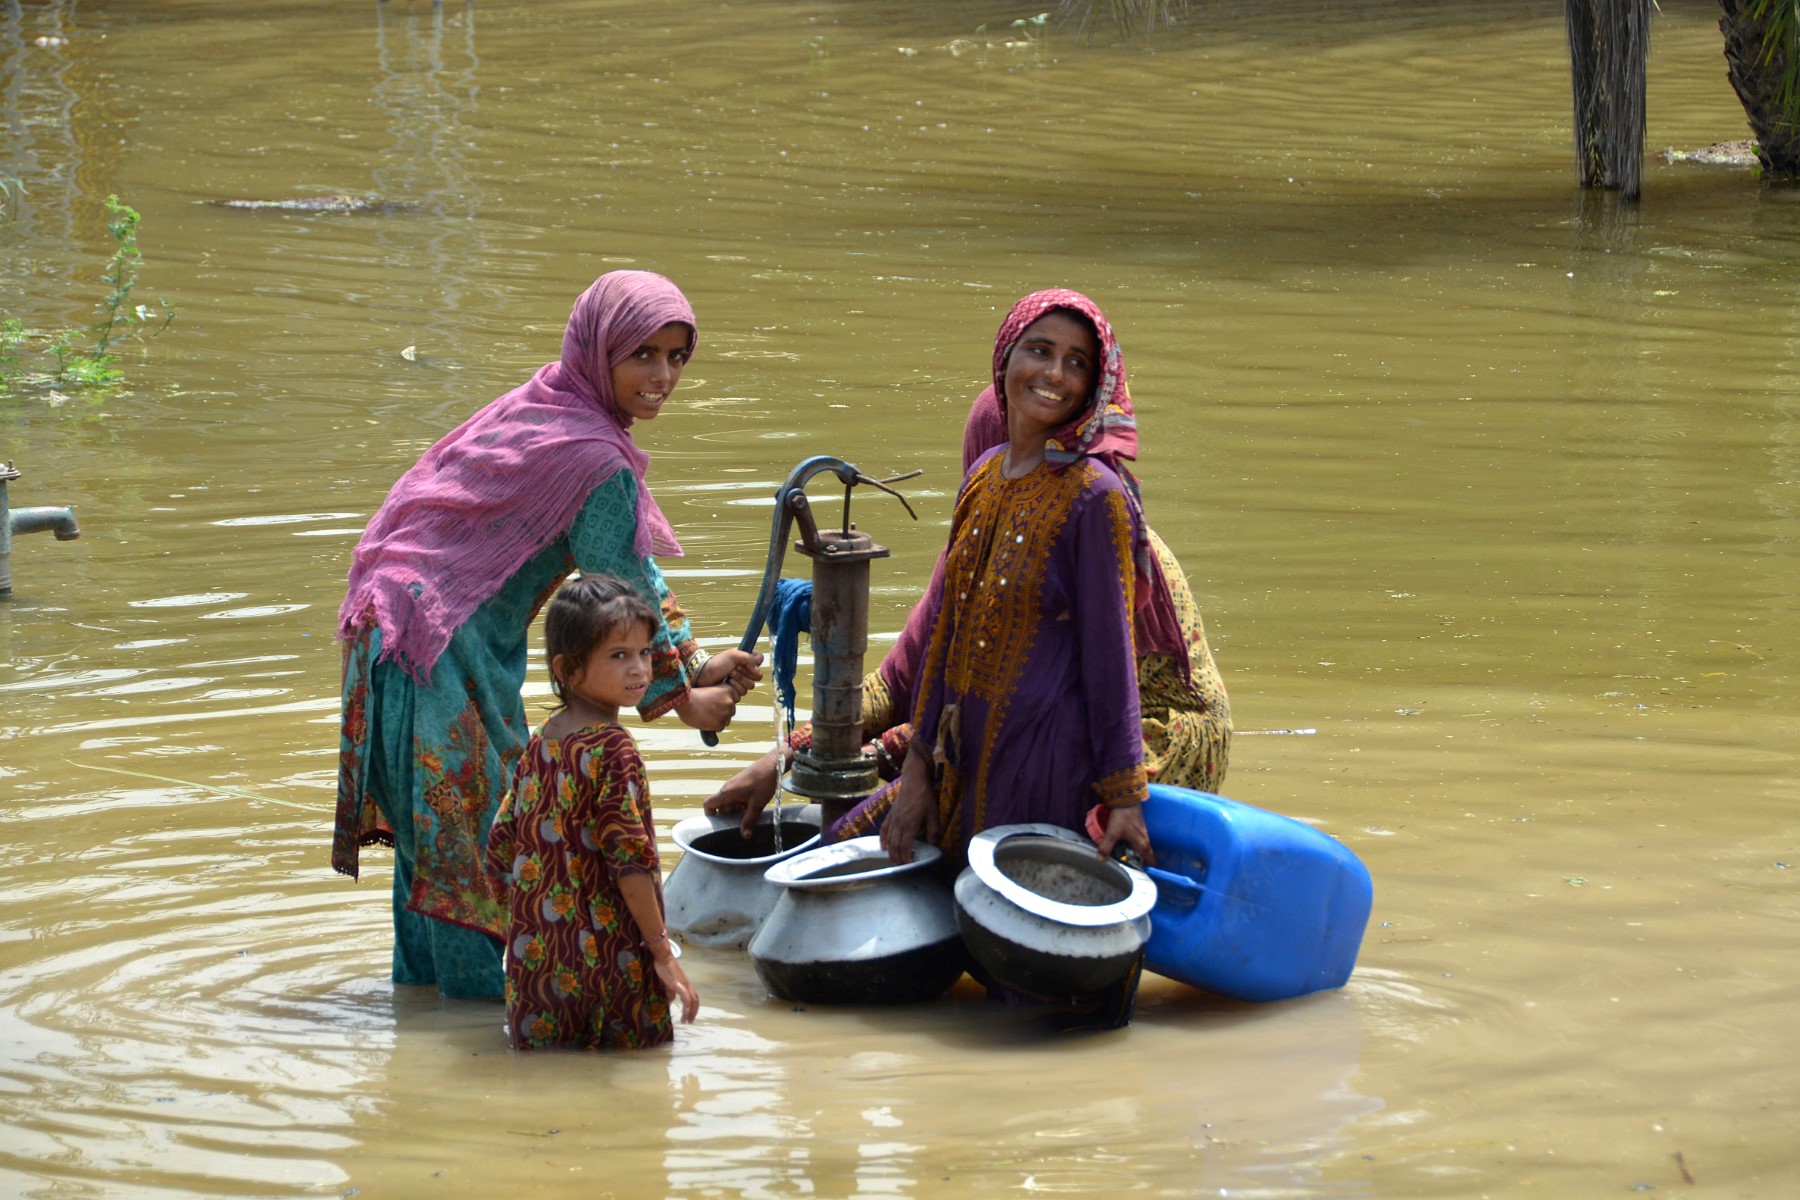 پاکستان میں ریکارڈ مانسون اور شدید سیلاب نے بھوک اور مختلف بیماریوں کو جنم دیا ہے جس سے 33 ملین افراد متاثر ہوئے ہیں۔